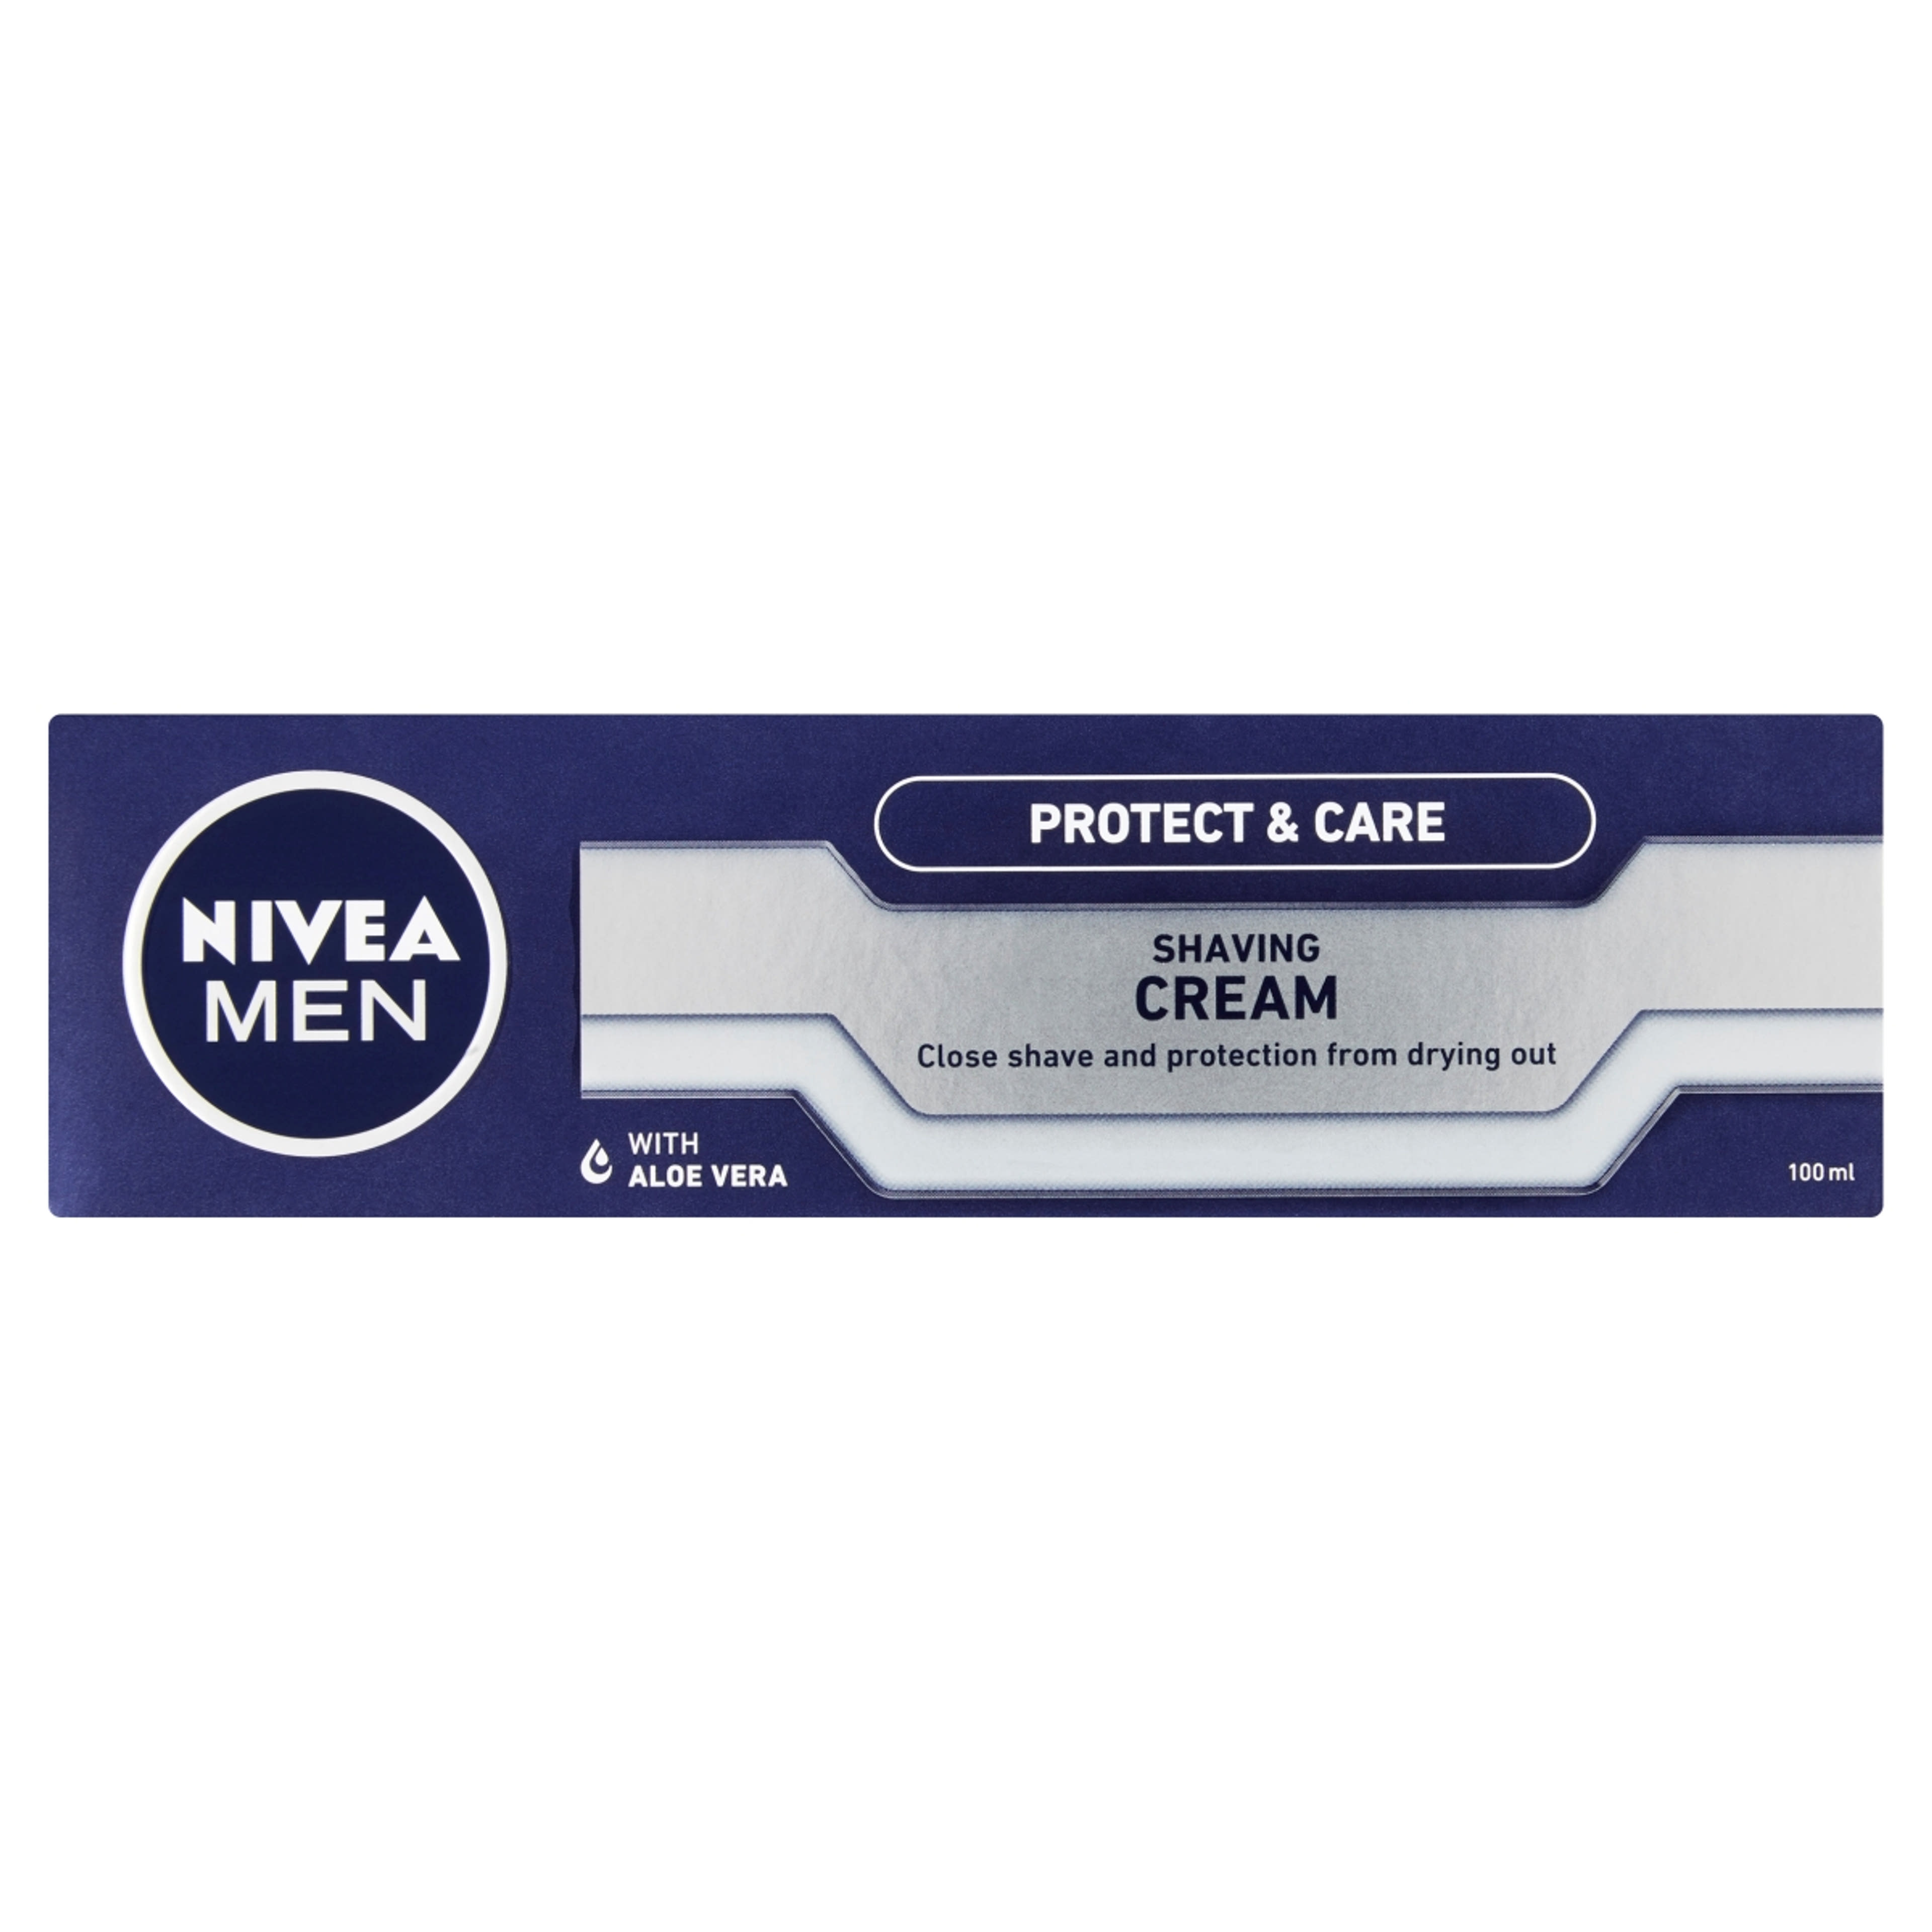 Nivea Men Protect & Care borotvakrém - 100 ml-1